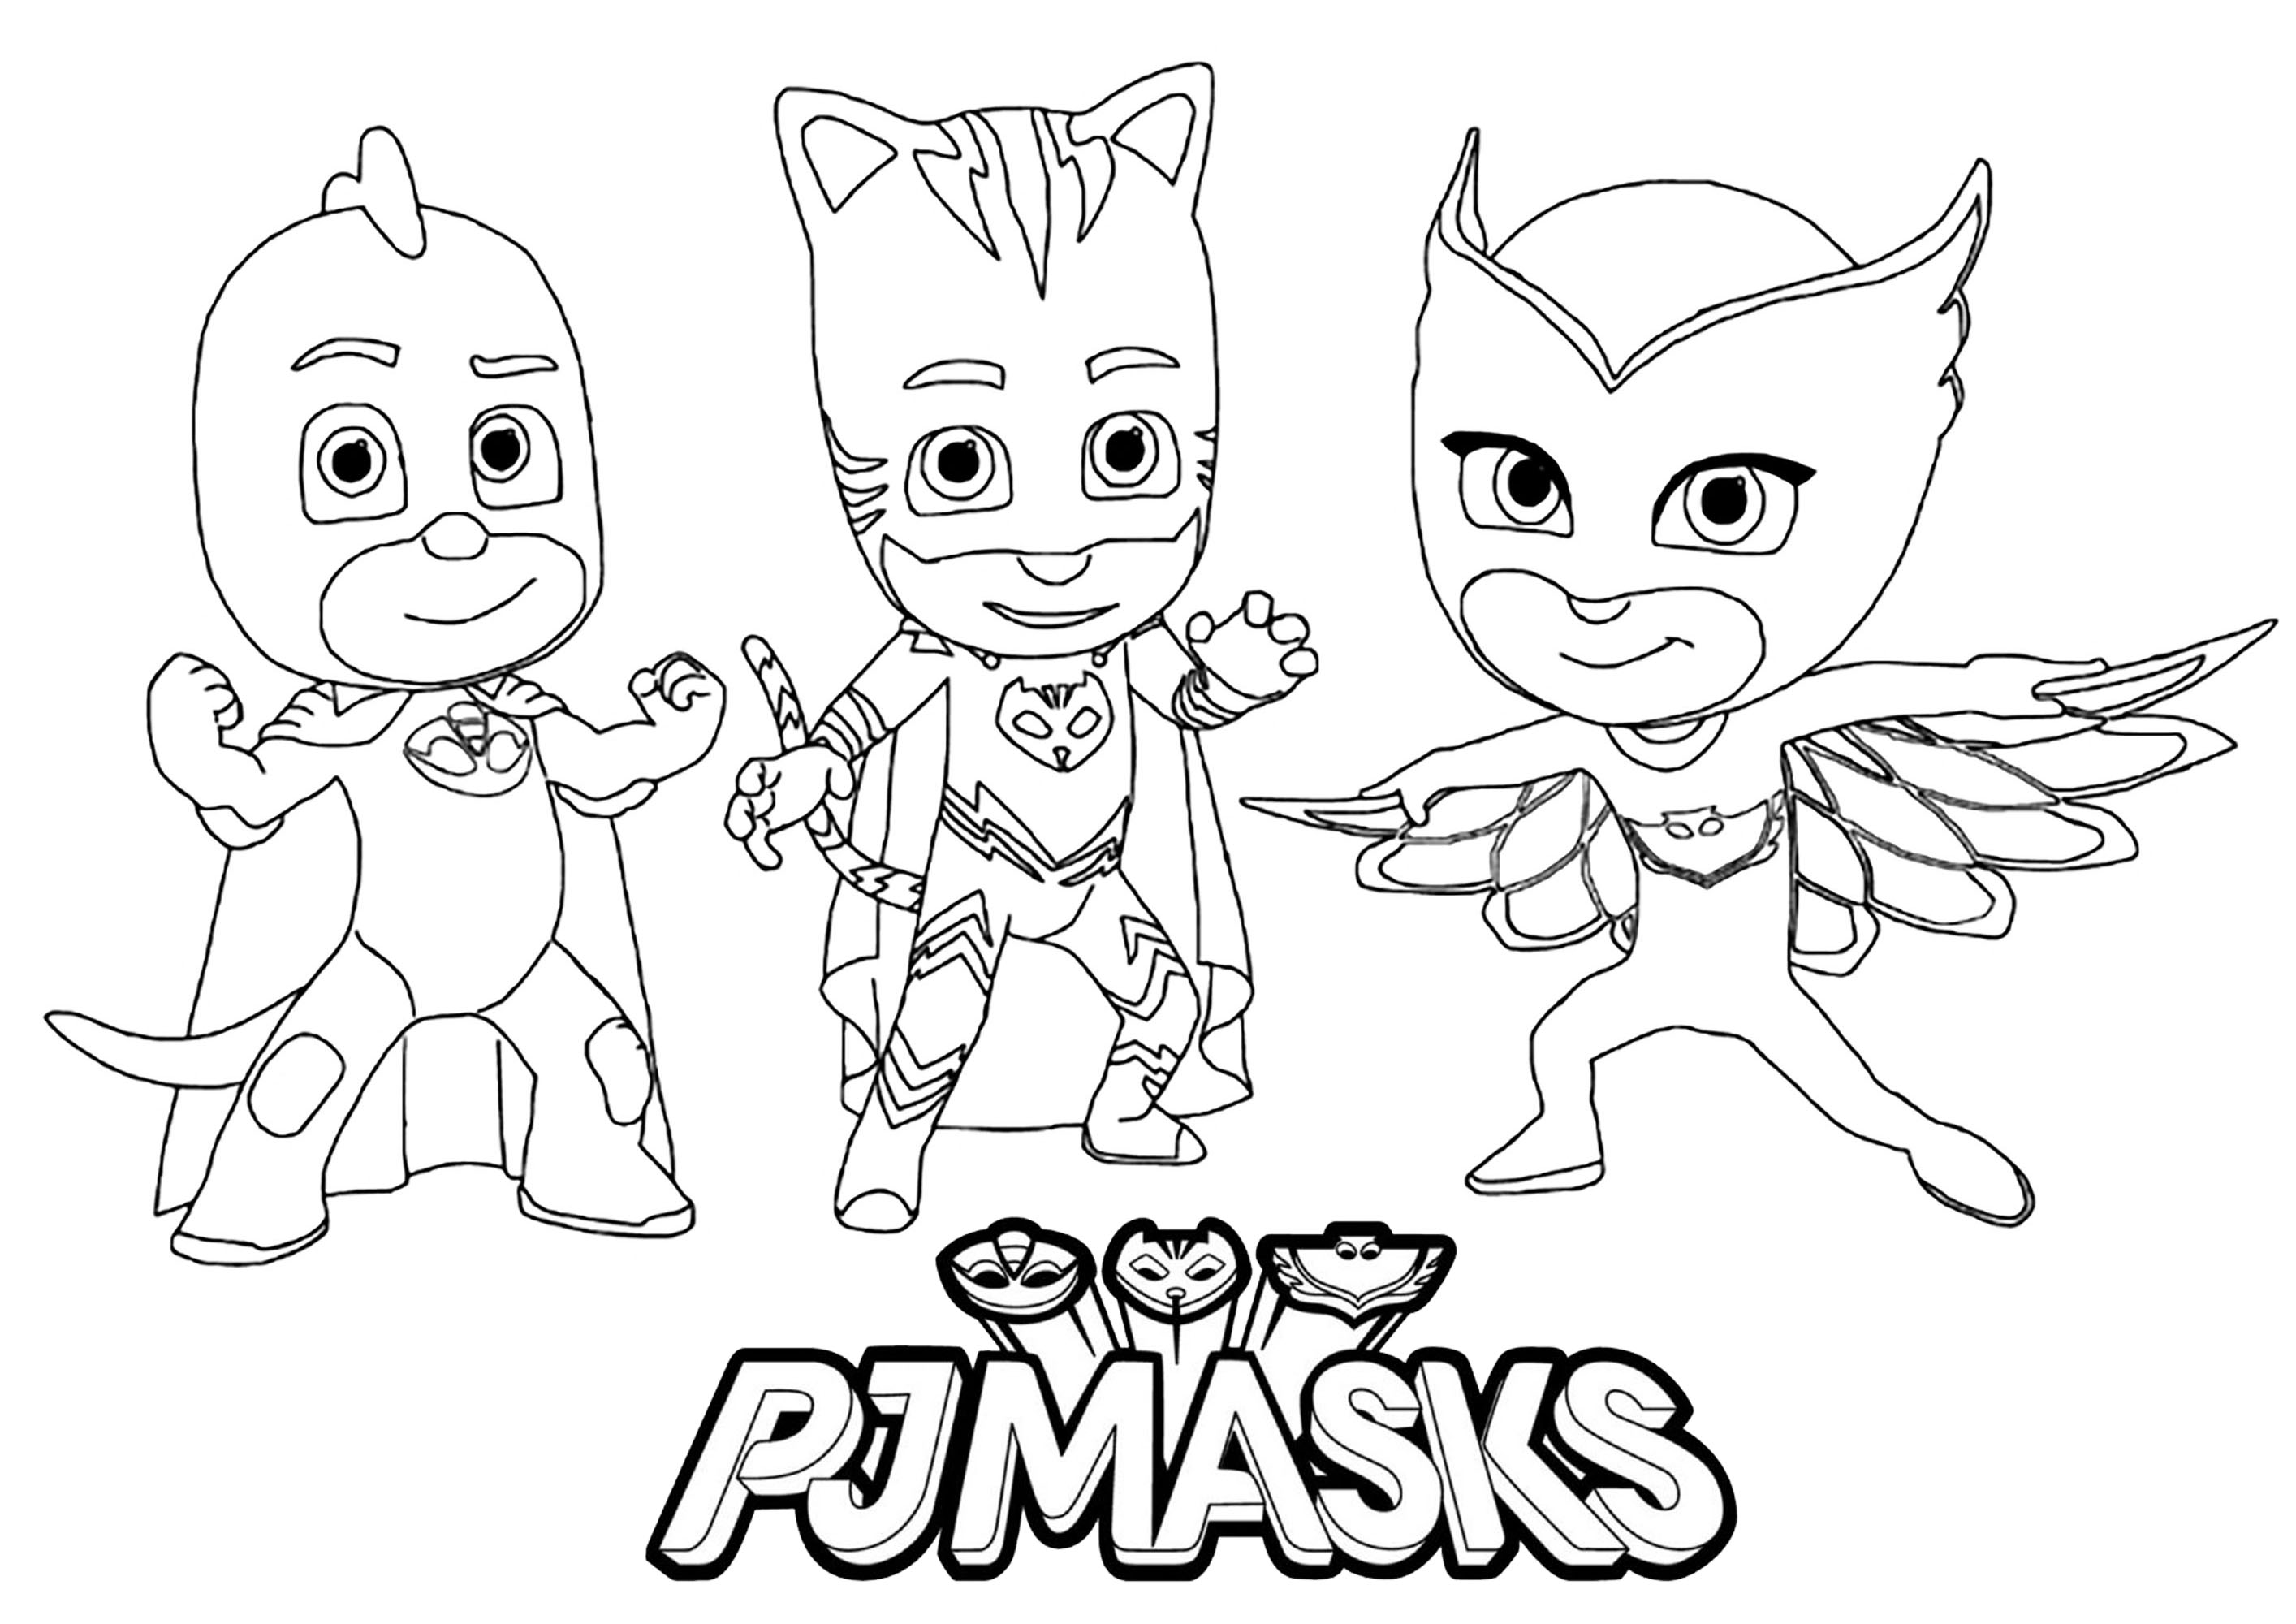 Download Pj masks to download for free - PJ Masks Kids Coloring Pages